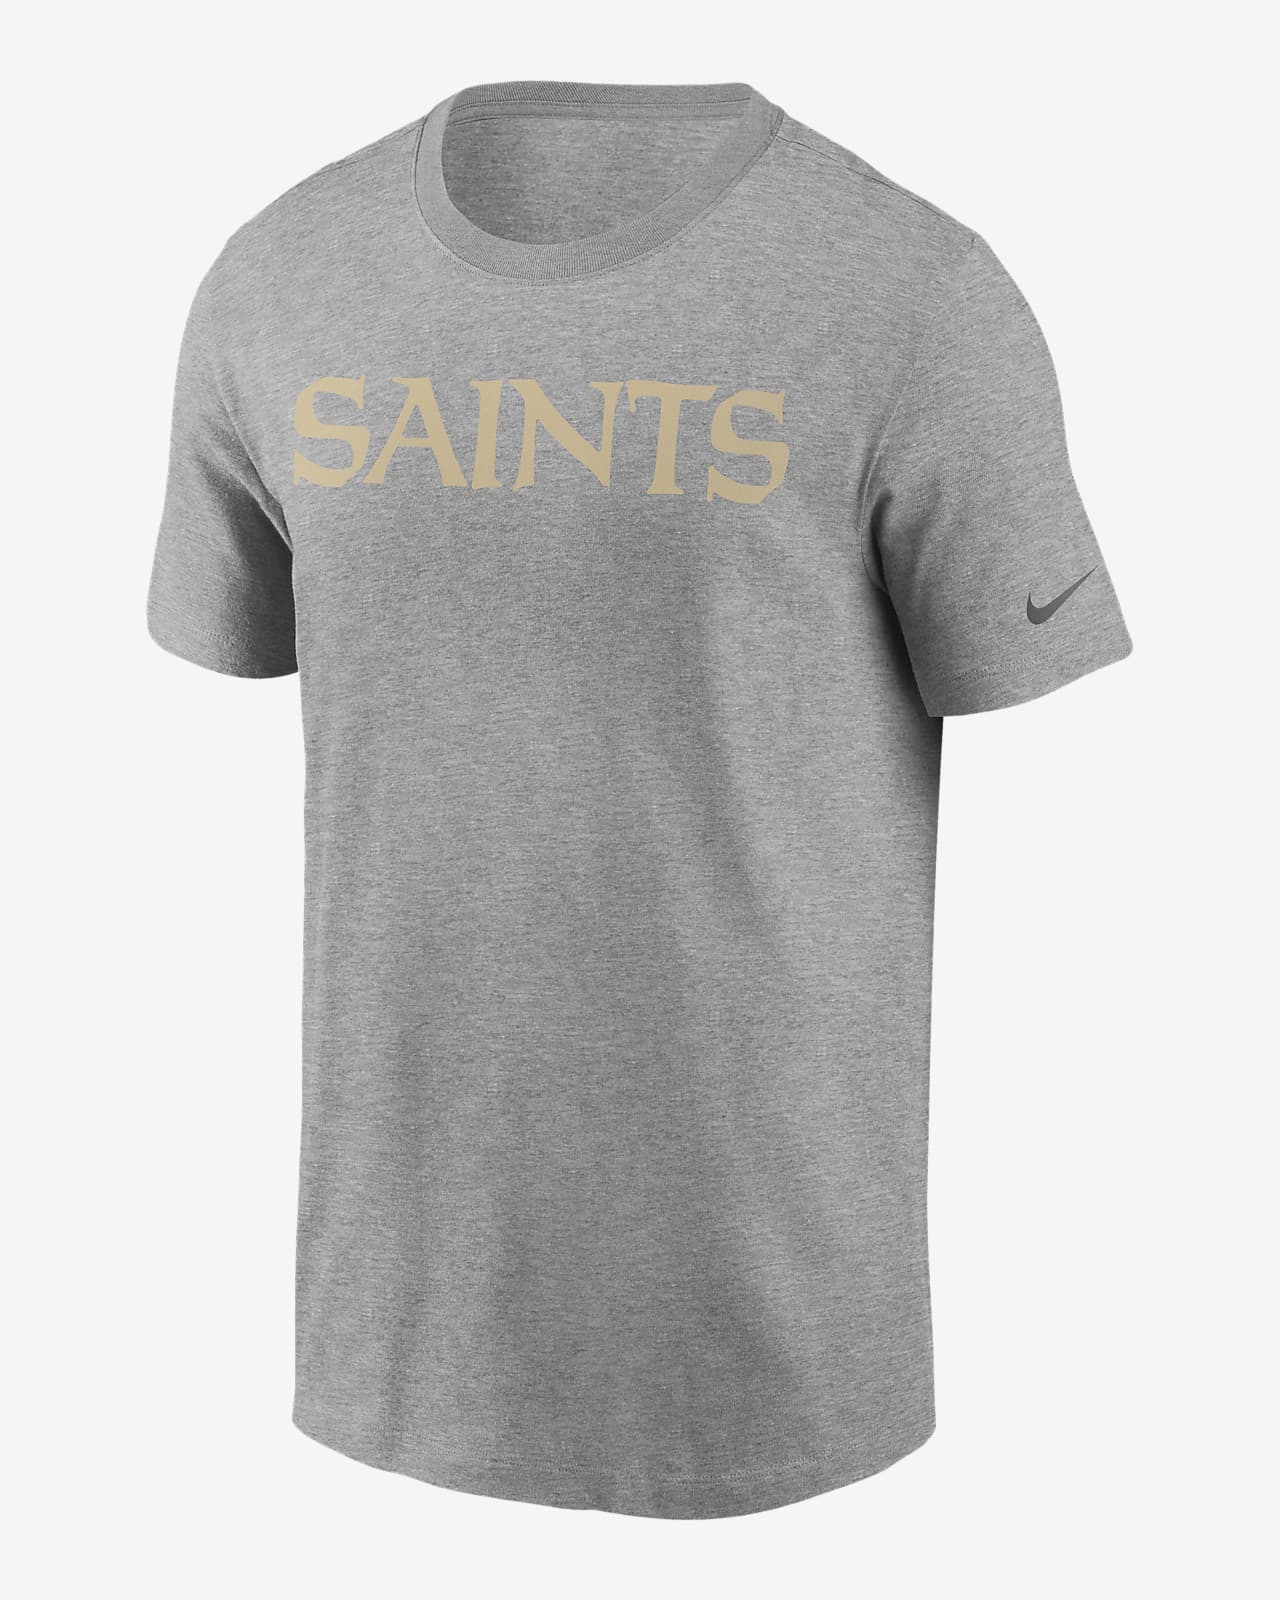 Nike (NFL Saints) Men's T-Shirt. Nike.com